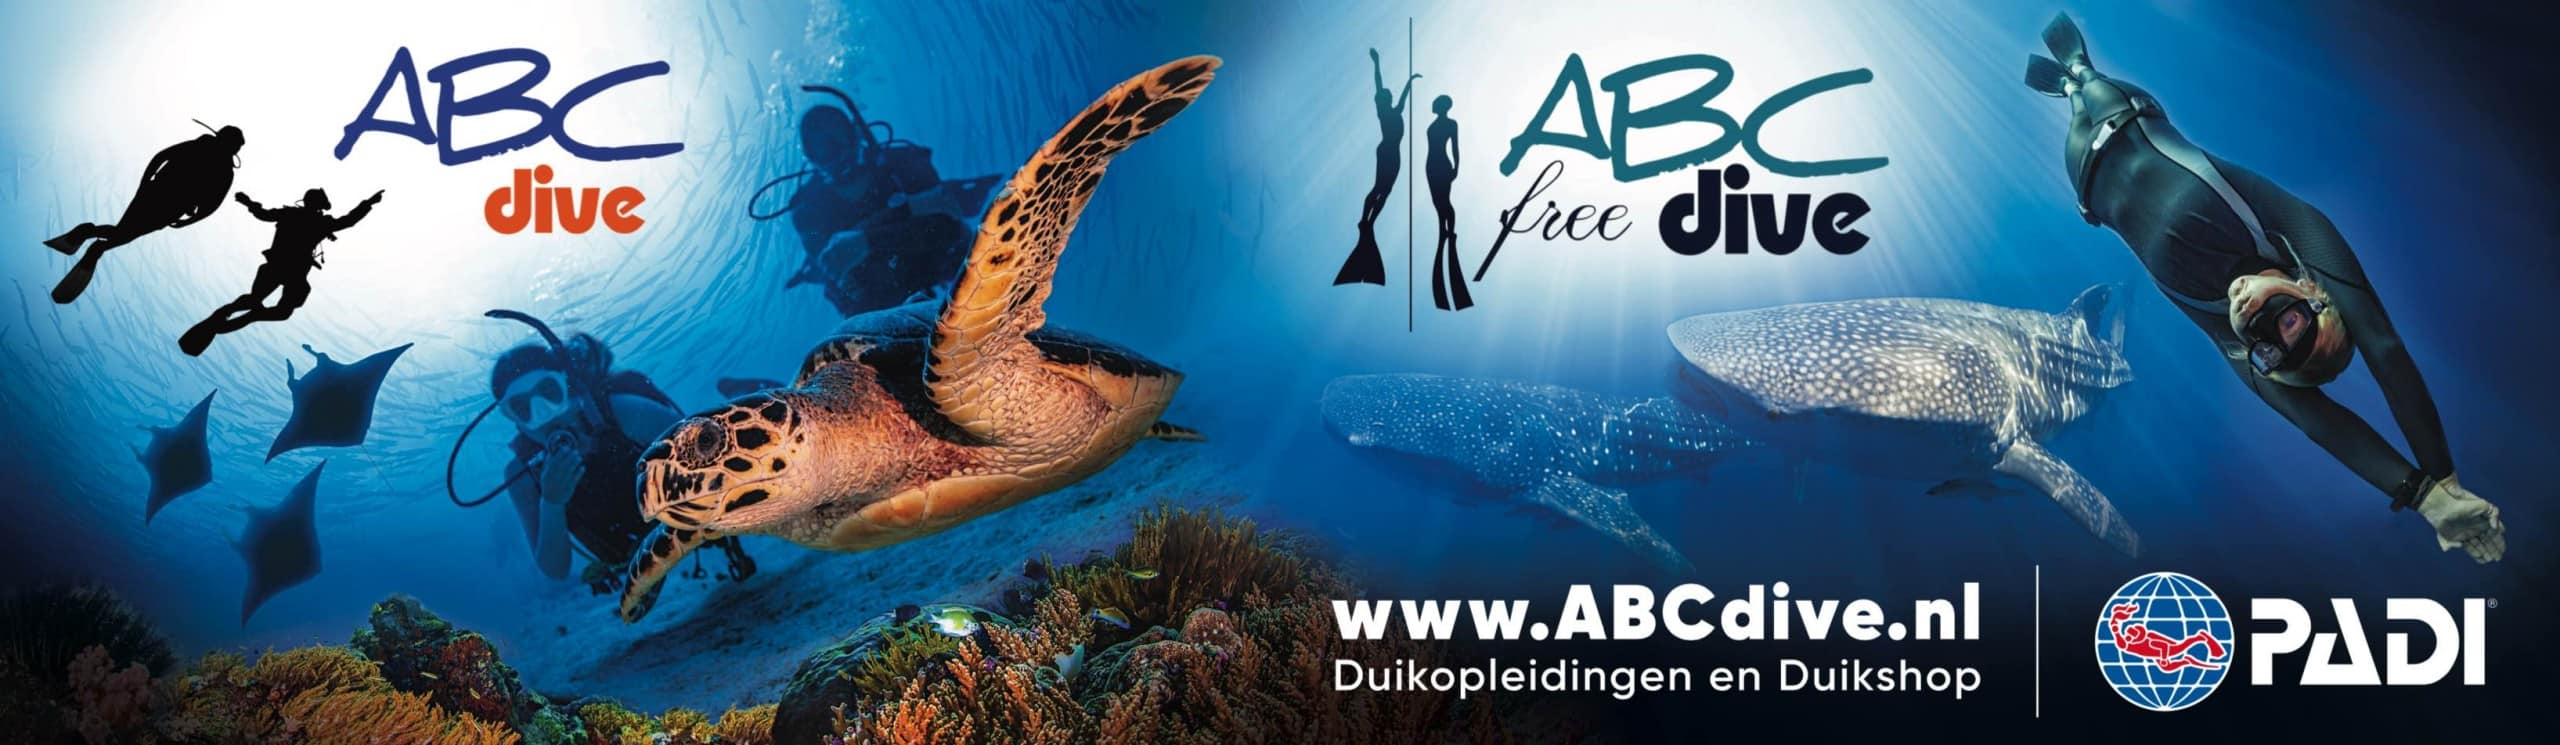 ABC Dive ABC free Dive banner